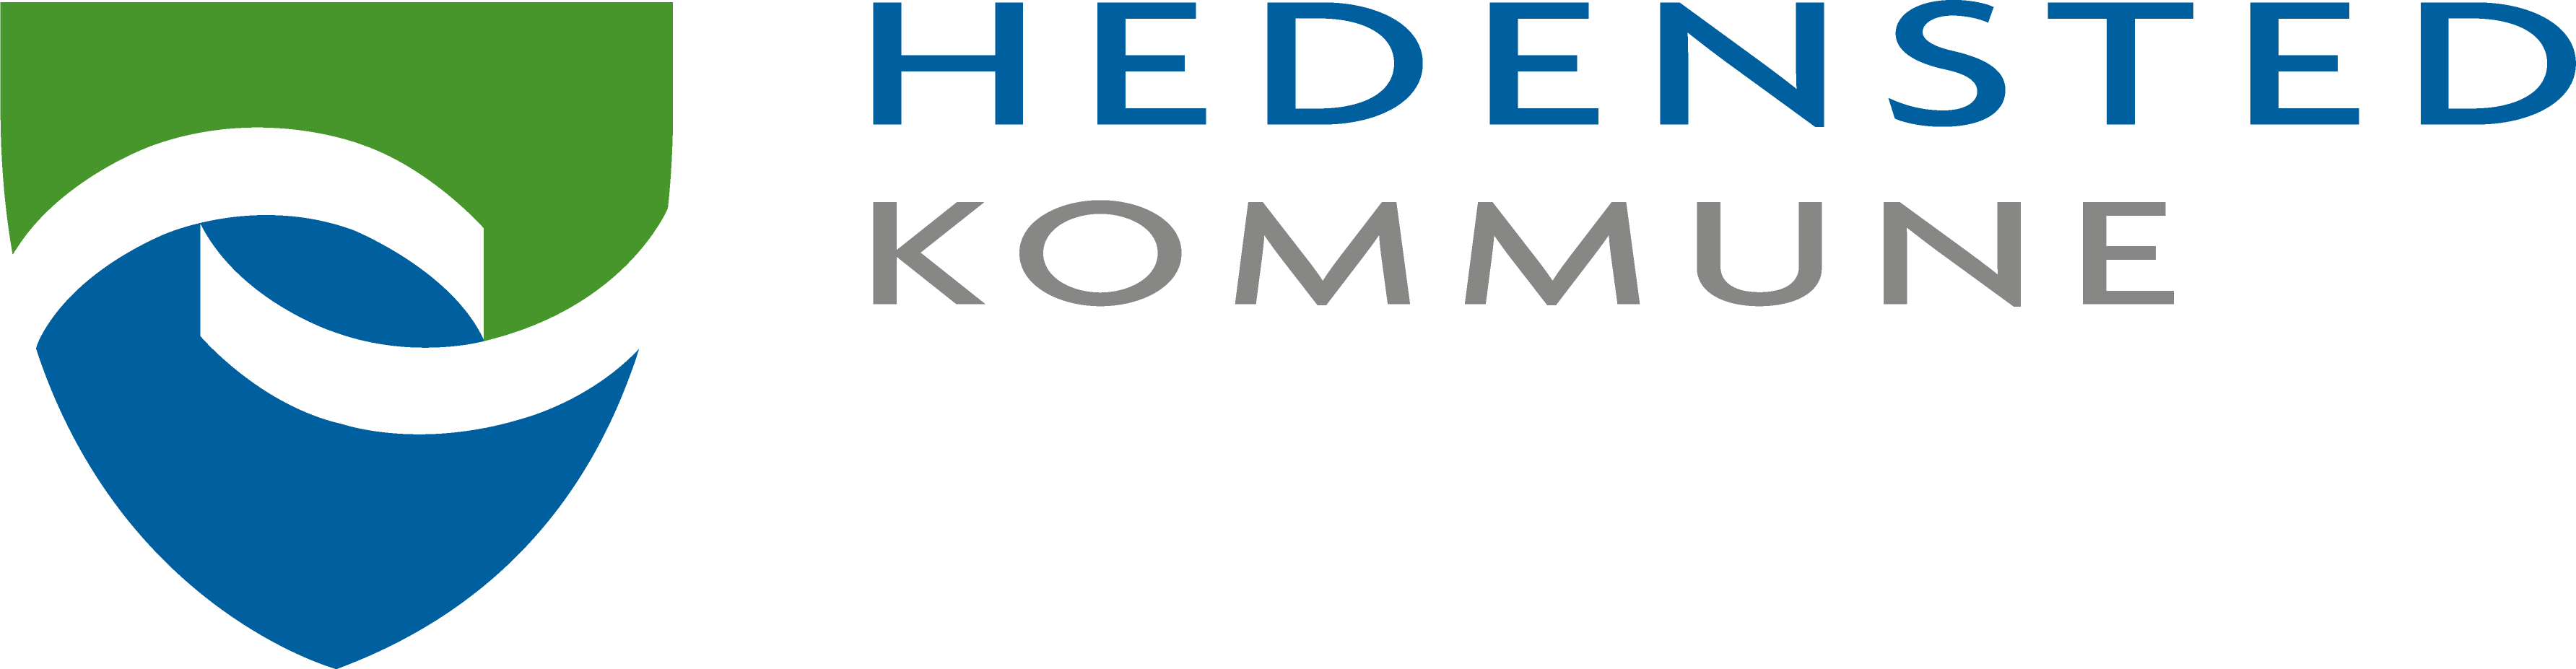 Hedensted Kommune - Logo